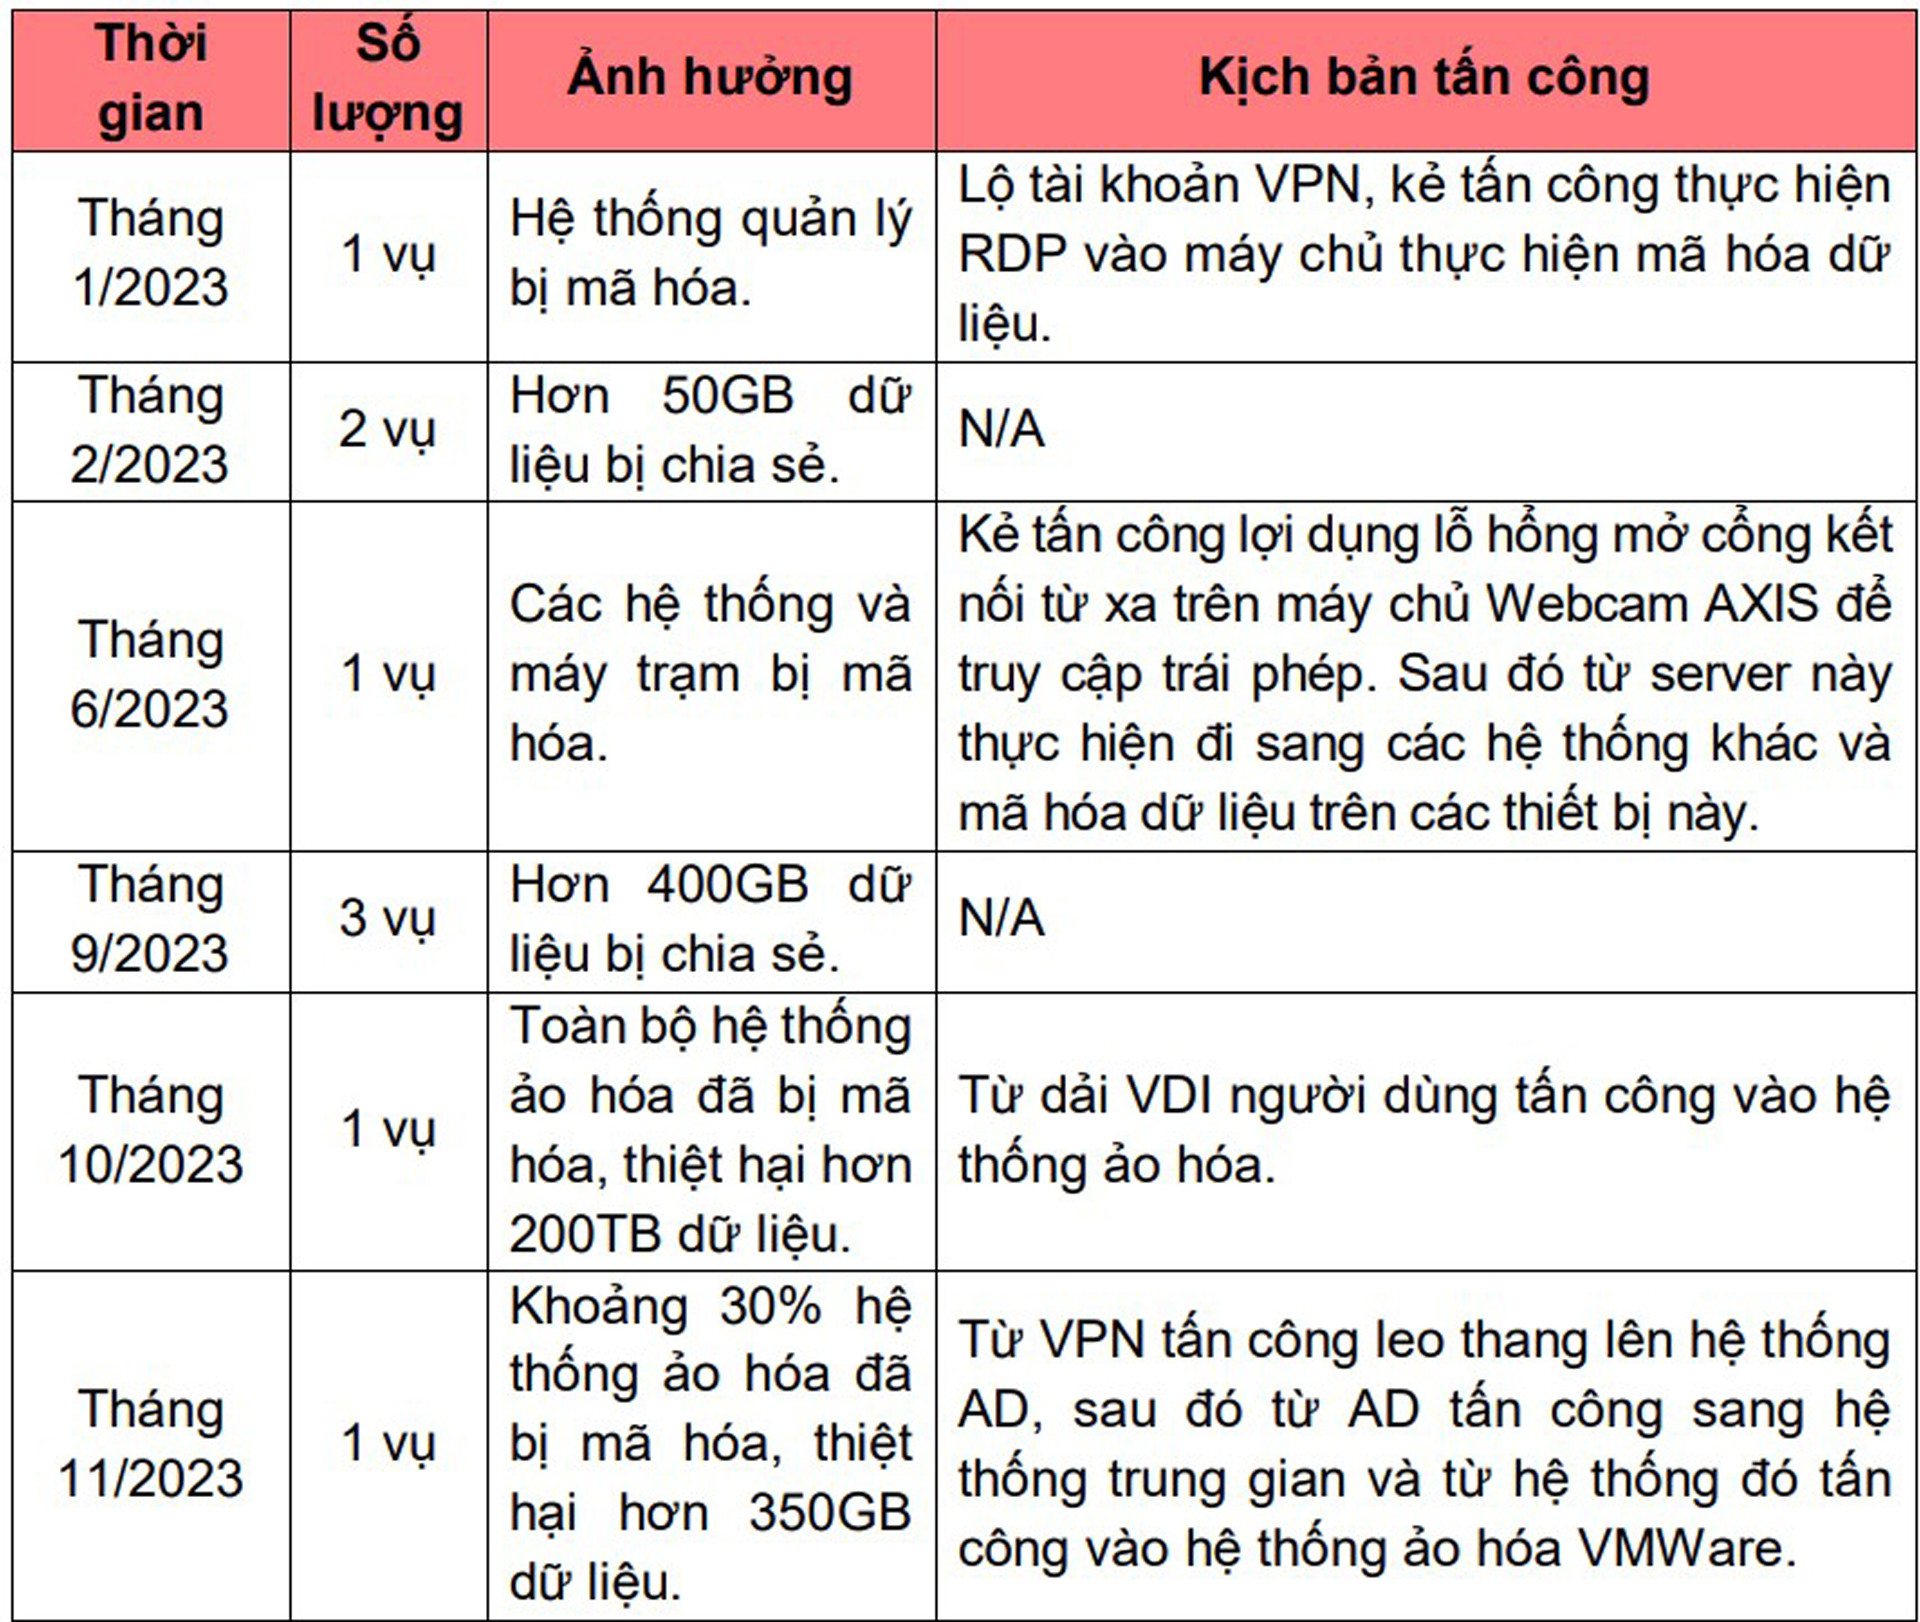 thong-ke-tan-cong-ransomware-tai-vietnam-1-407.jpg